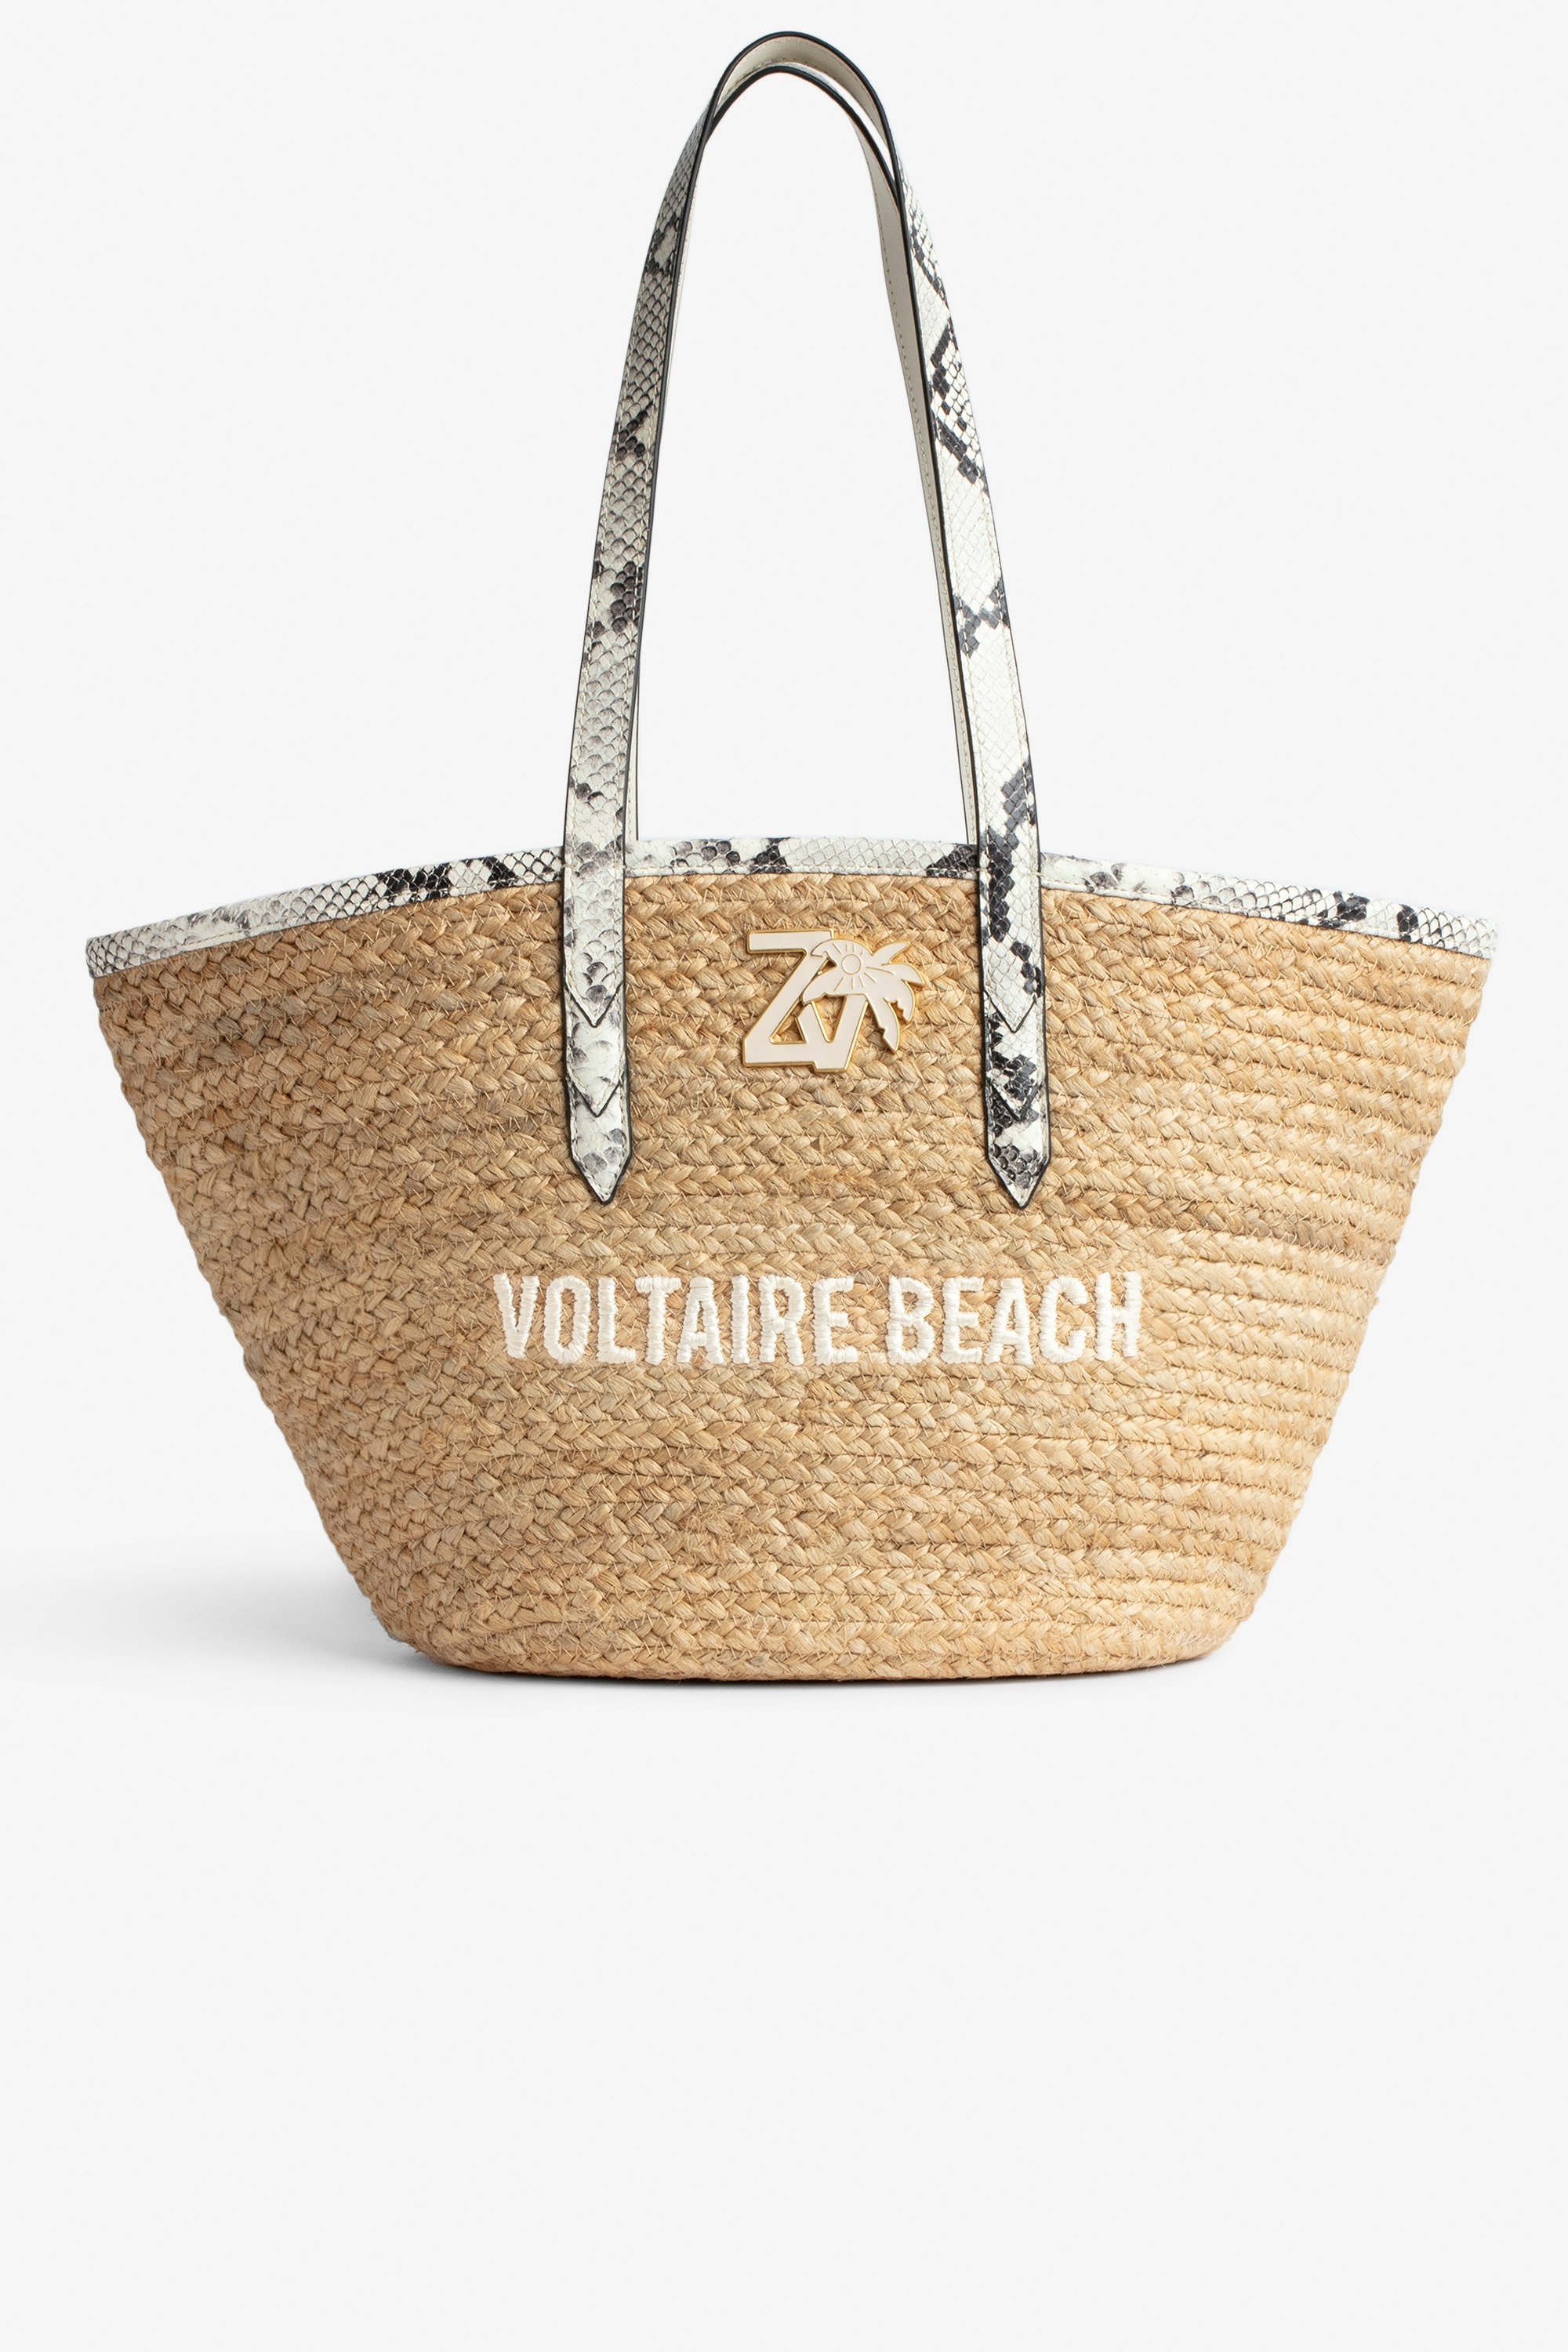 Sac Le Beach Bag Sac en paille à anses en cuir écru effet python, brodé "Voltaire Beach" et orné d'un charm ZV Femme